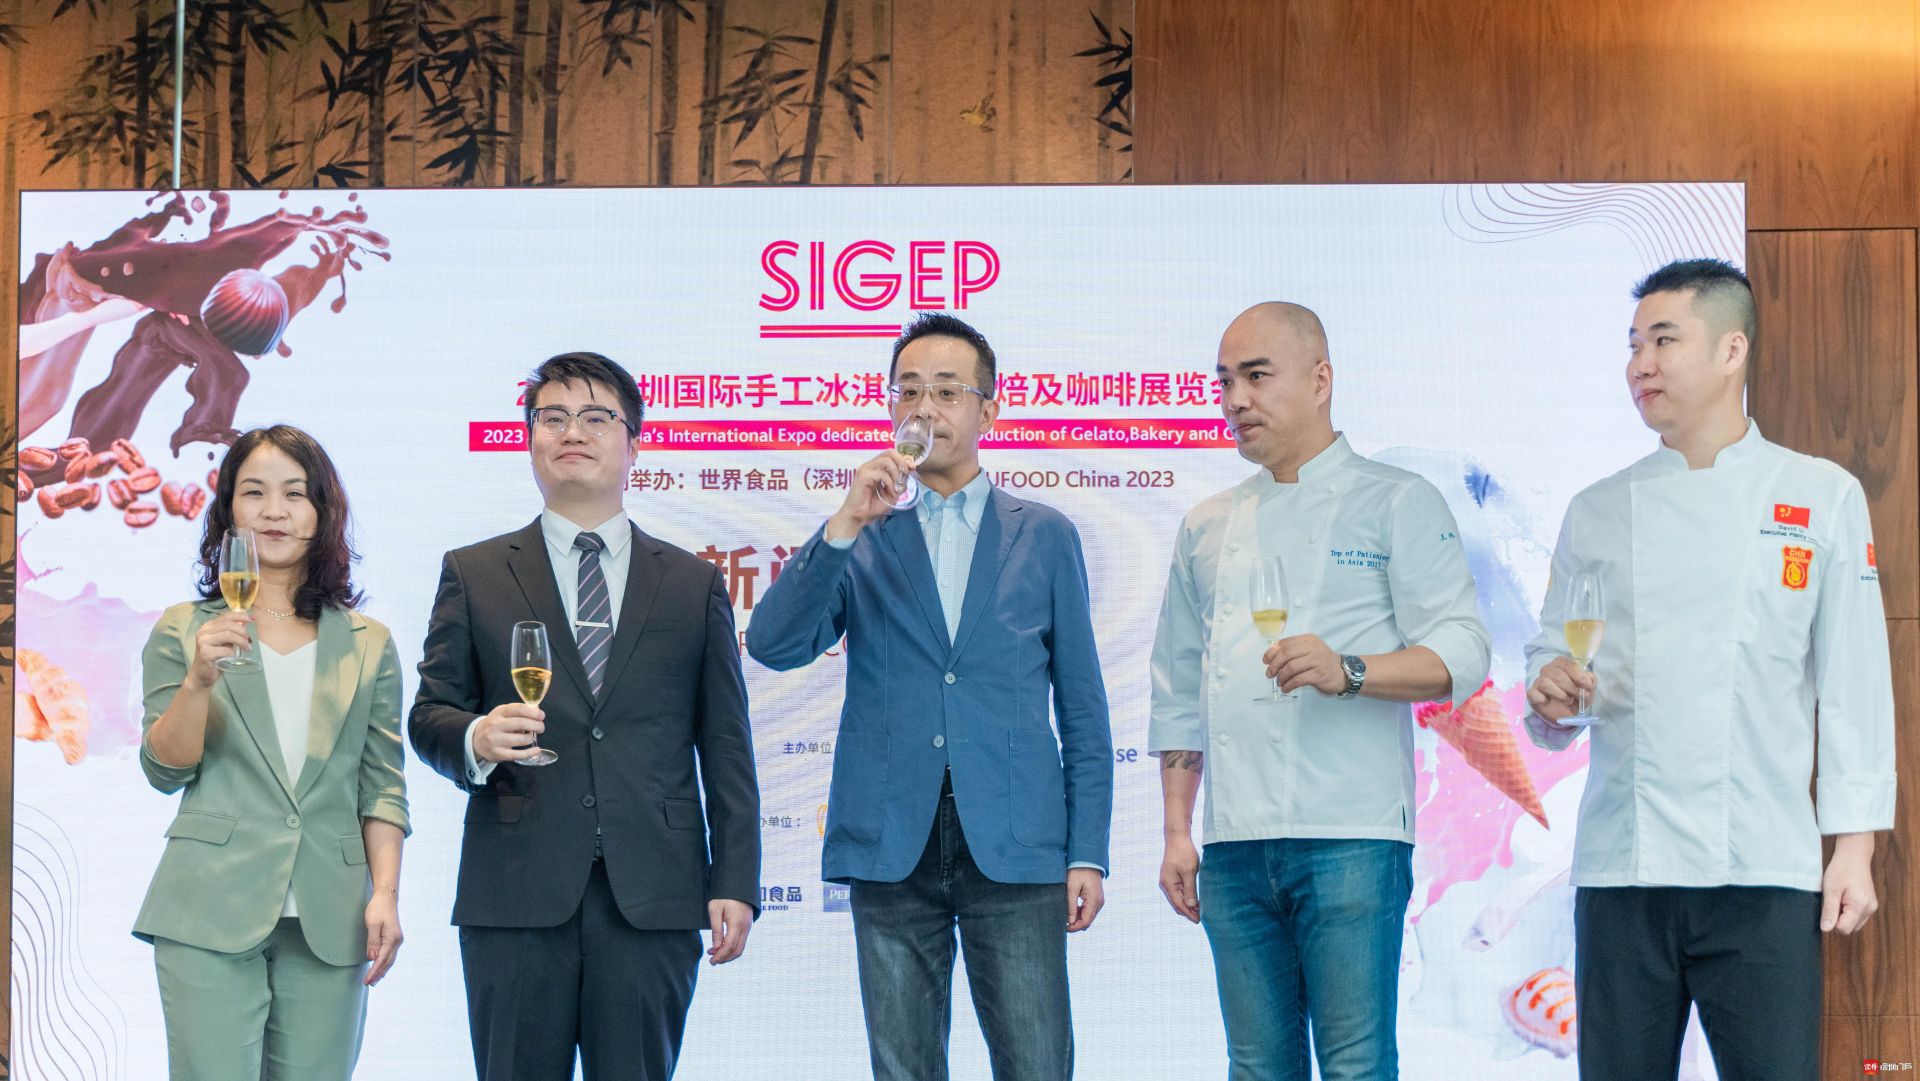 首届SIGEP China 2023明年将落地深圳